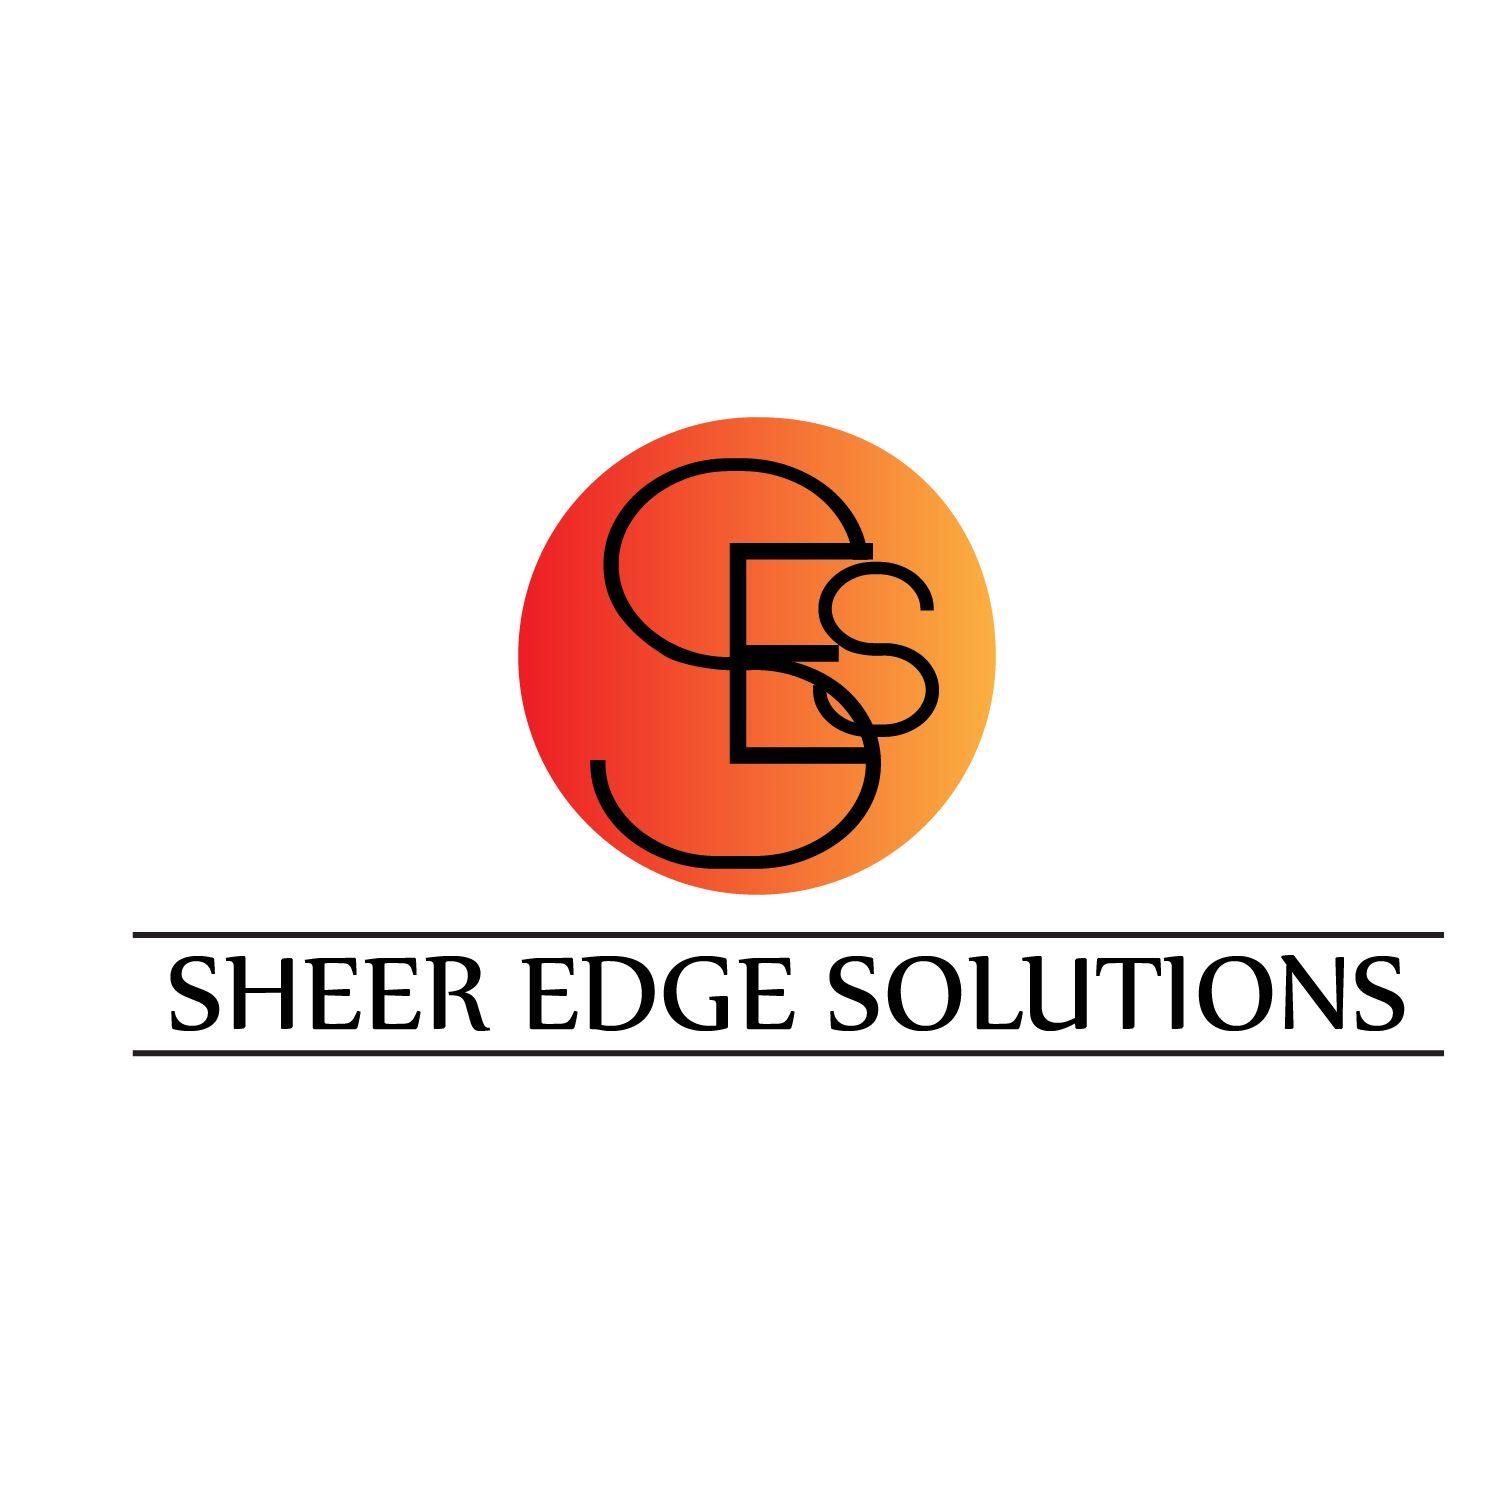 Sheer Logo - Modern, Professional, Builder Logo Design for Sheer Edge Solutions